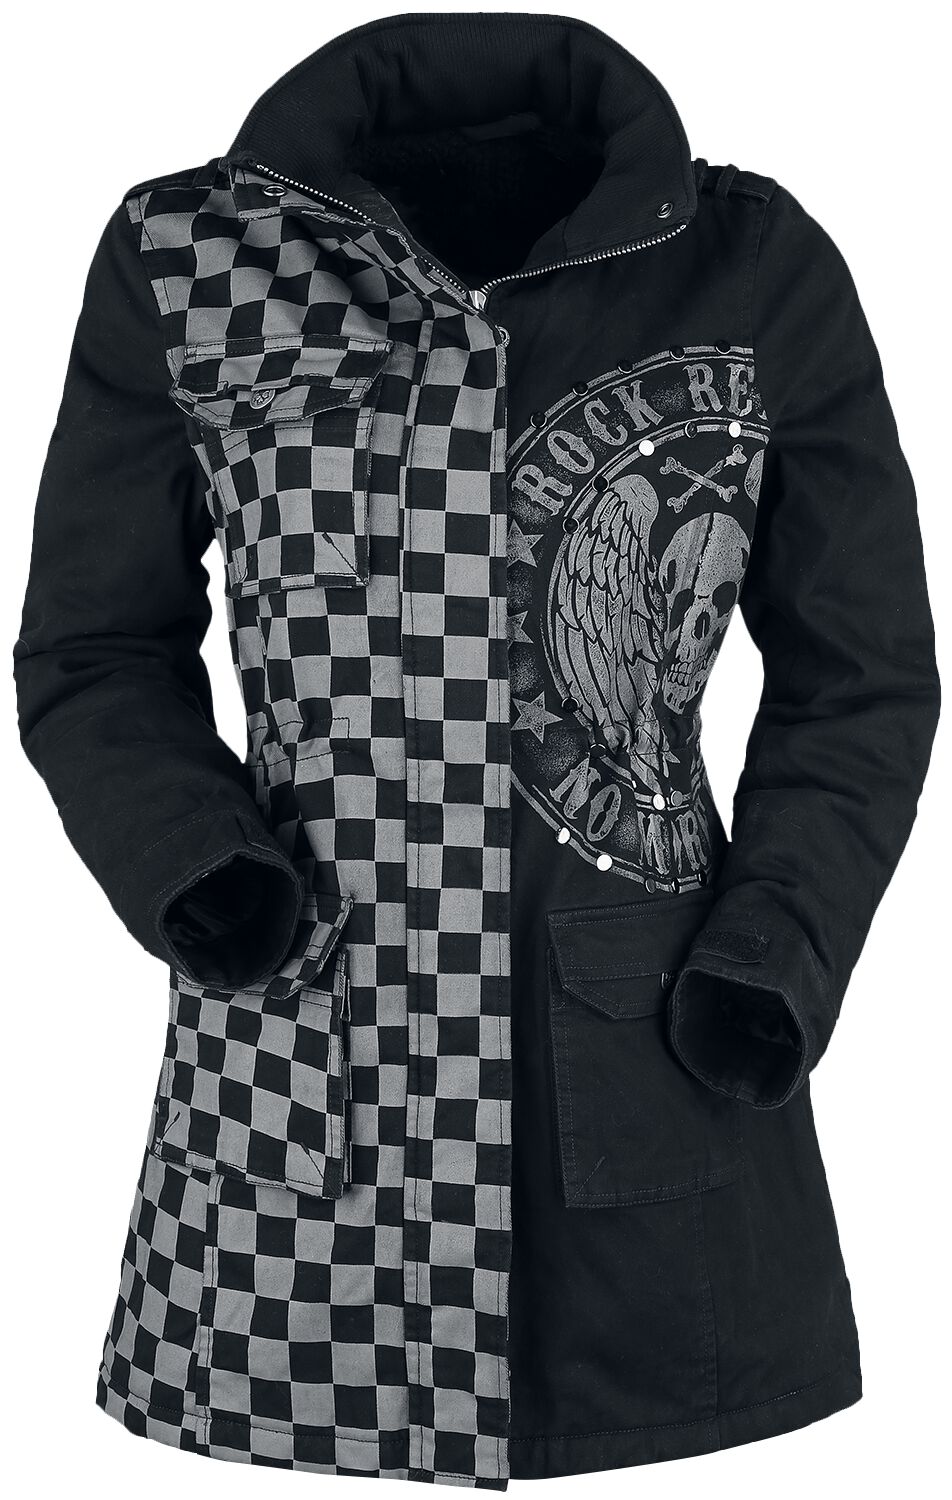 Rock Rebel by EMP - Rock Winterjacke - schwarz/graue Jacke mit Nieten und Print - S bis XXL - für Damen - Größe S - grau/schwarz